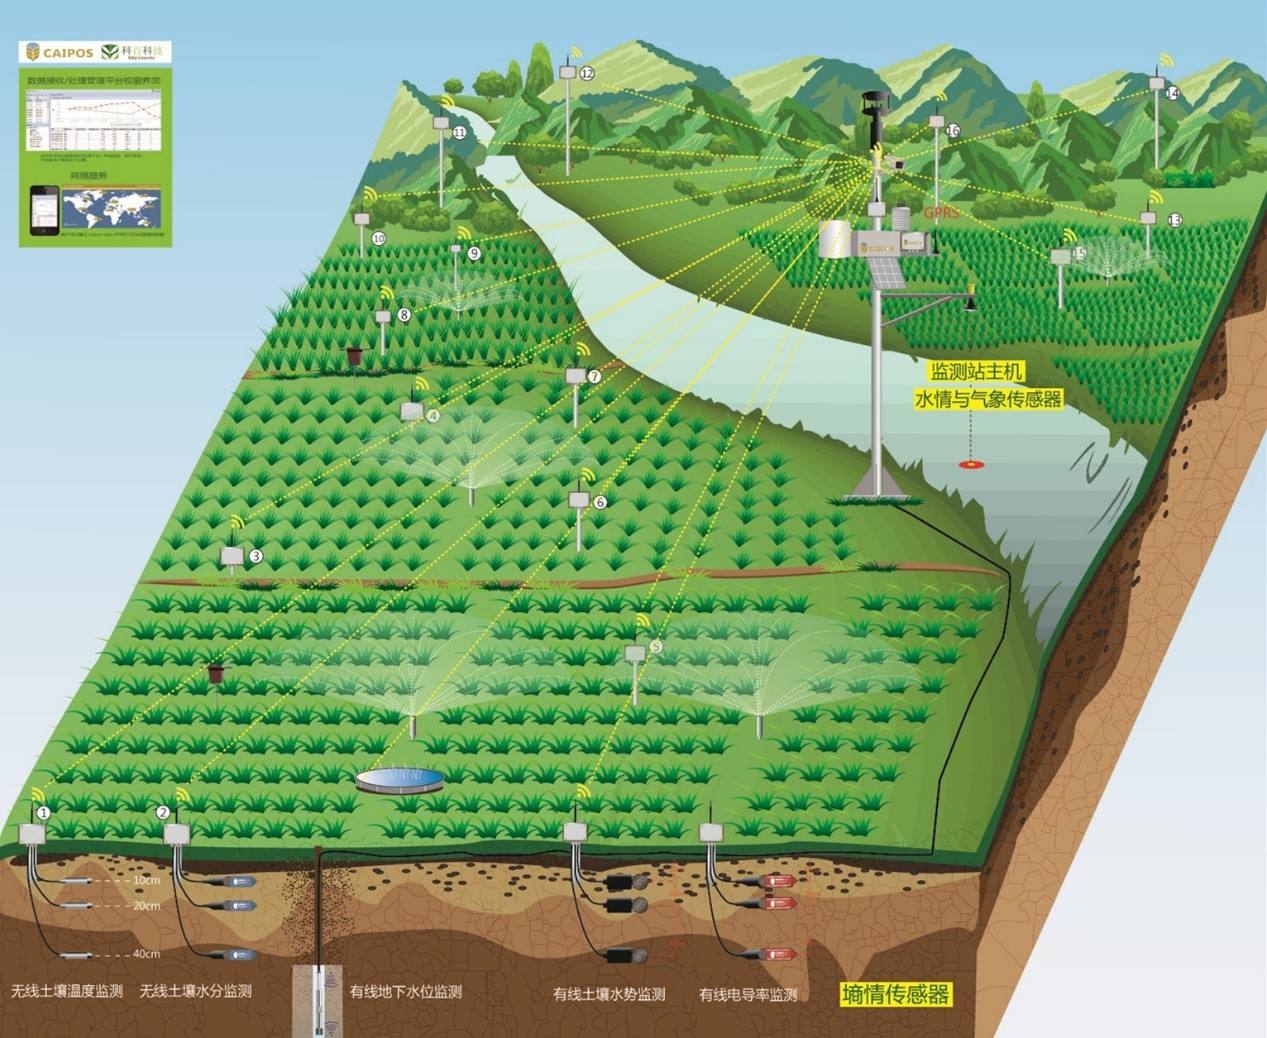 智慧农业仪器,土壤水分测定仪,气象站设备,土壤养分速测仪